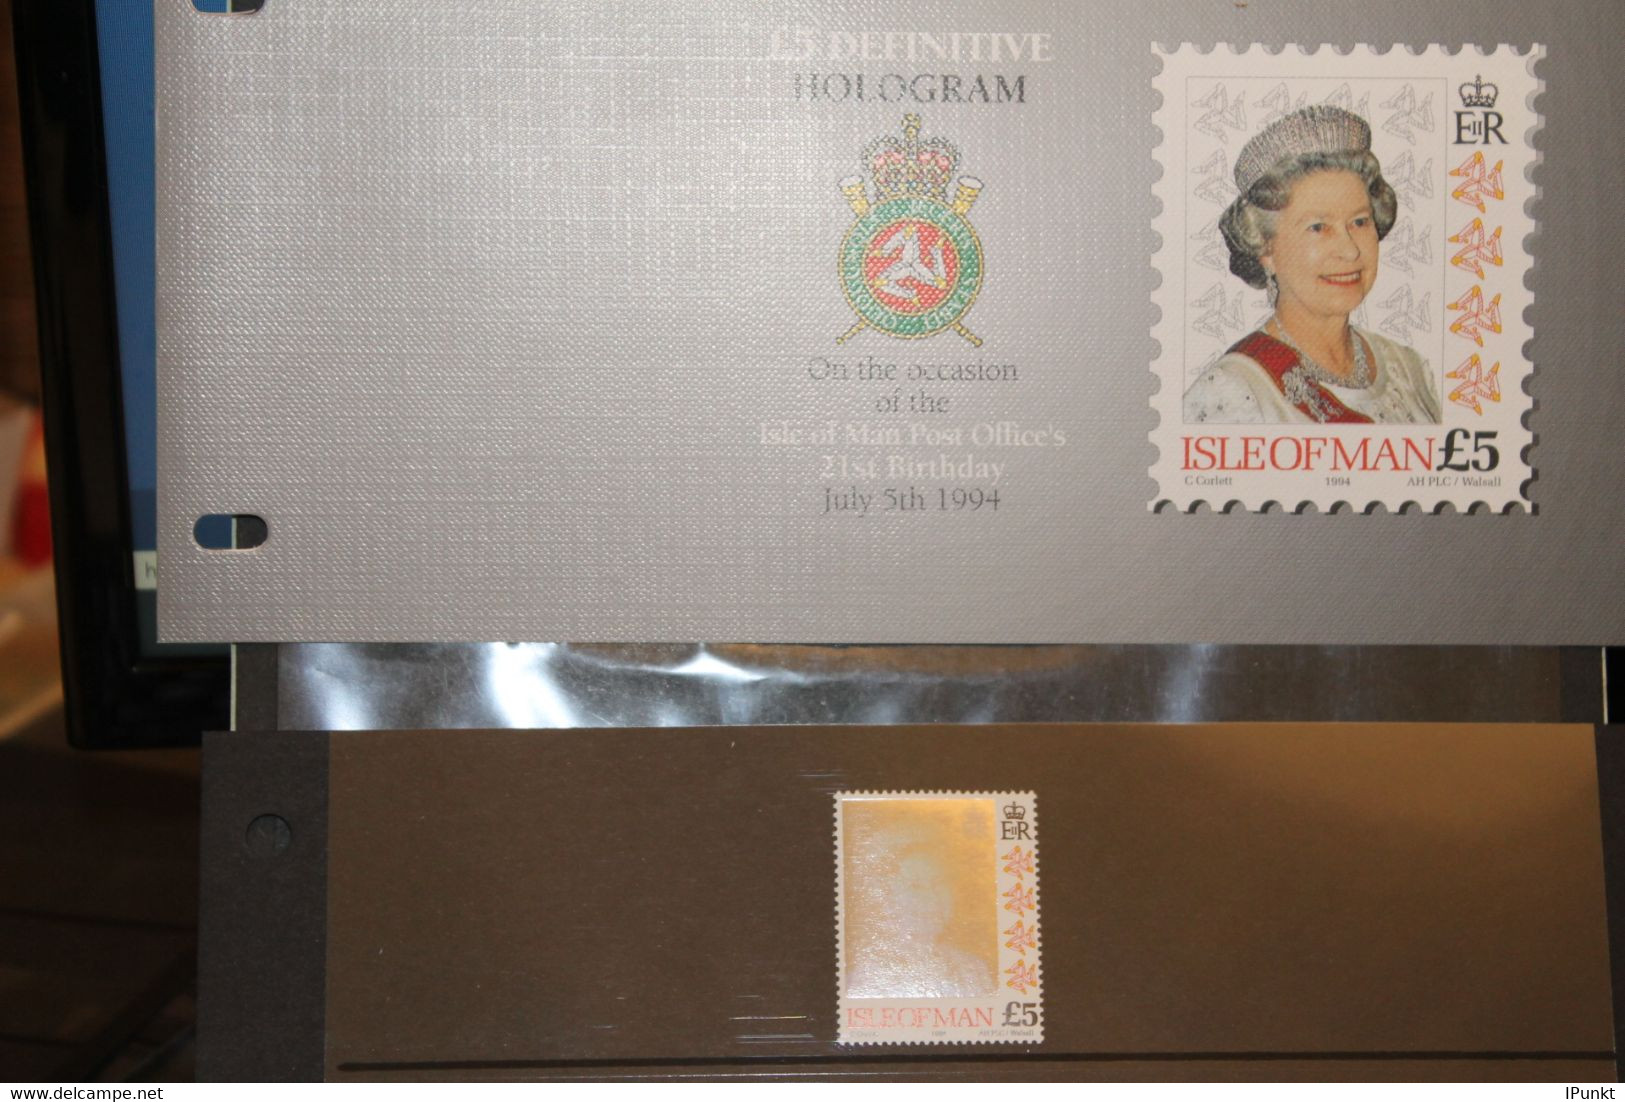 Hologramm, Hologrammmarke 1994, Isle Of Man, Königin Elisabeth II; 5 Pfund; Präsentationspack, MNH - Ologrammi